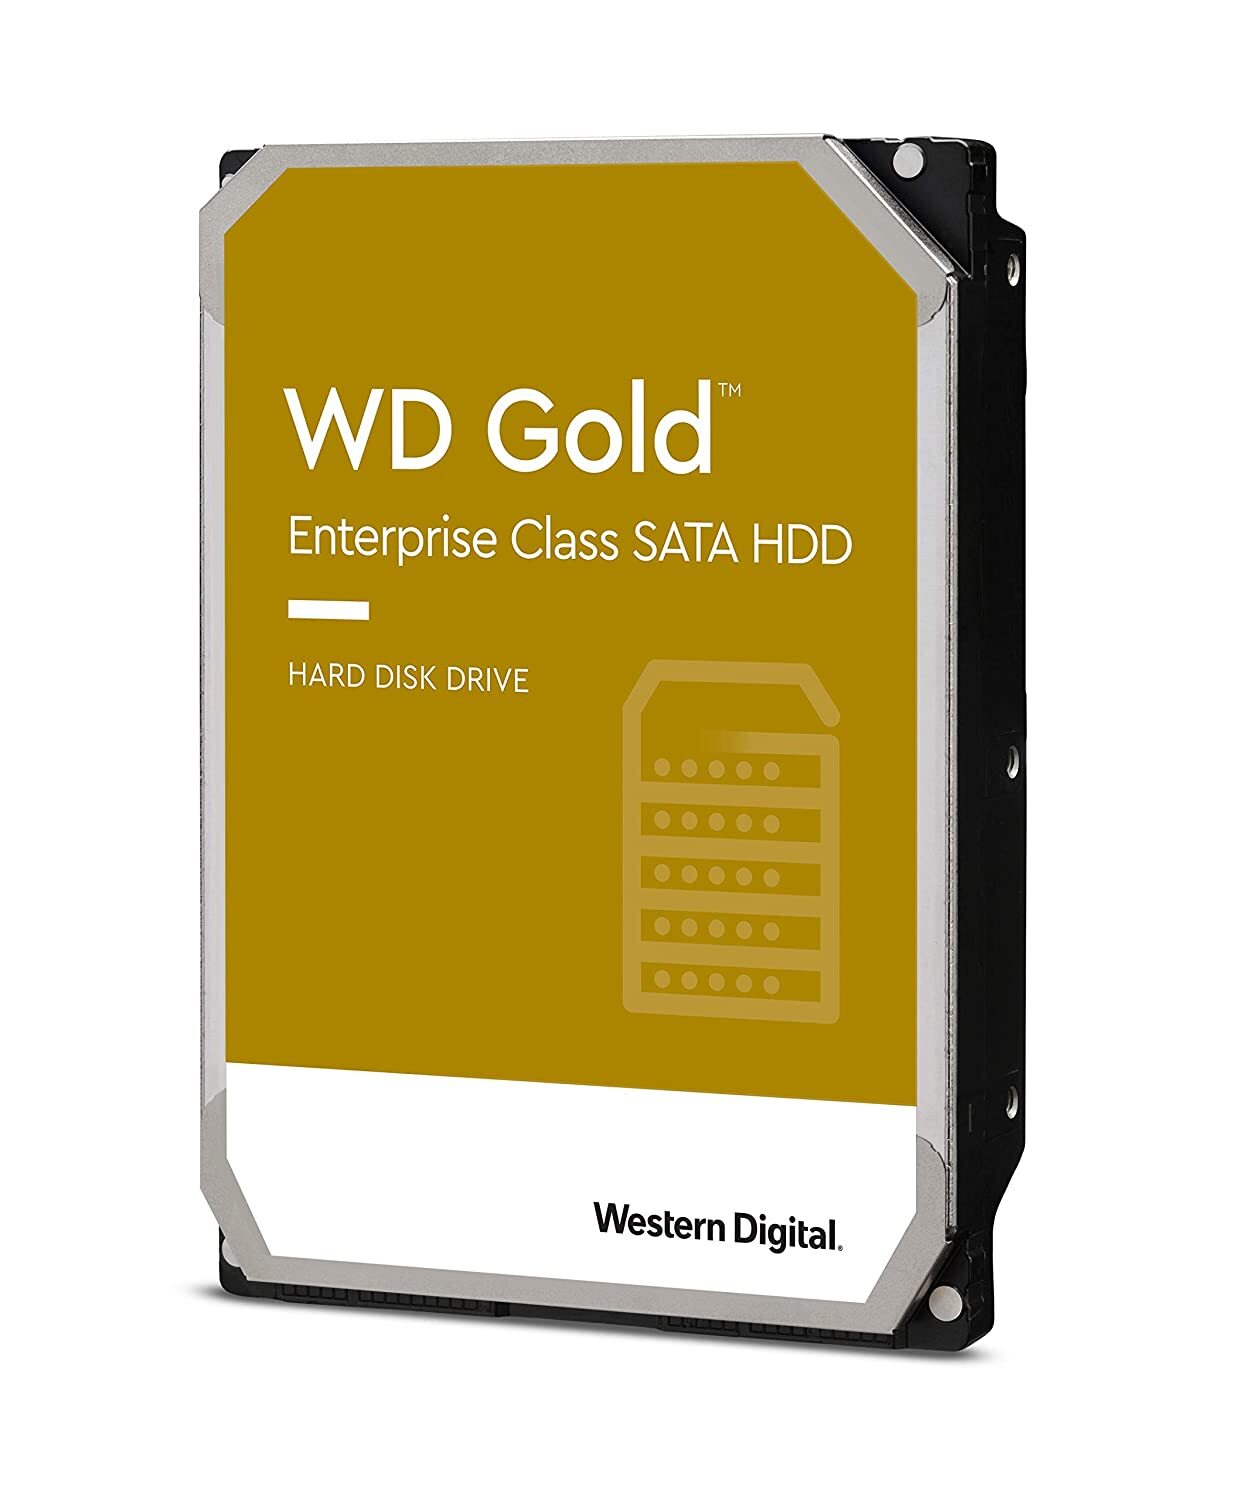 Western Digital Gold 2TB Internal SATA Hard Drive (WD2005FBYZ)